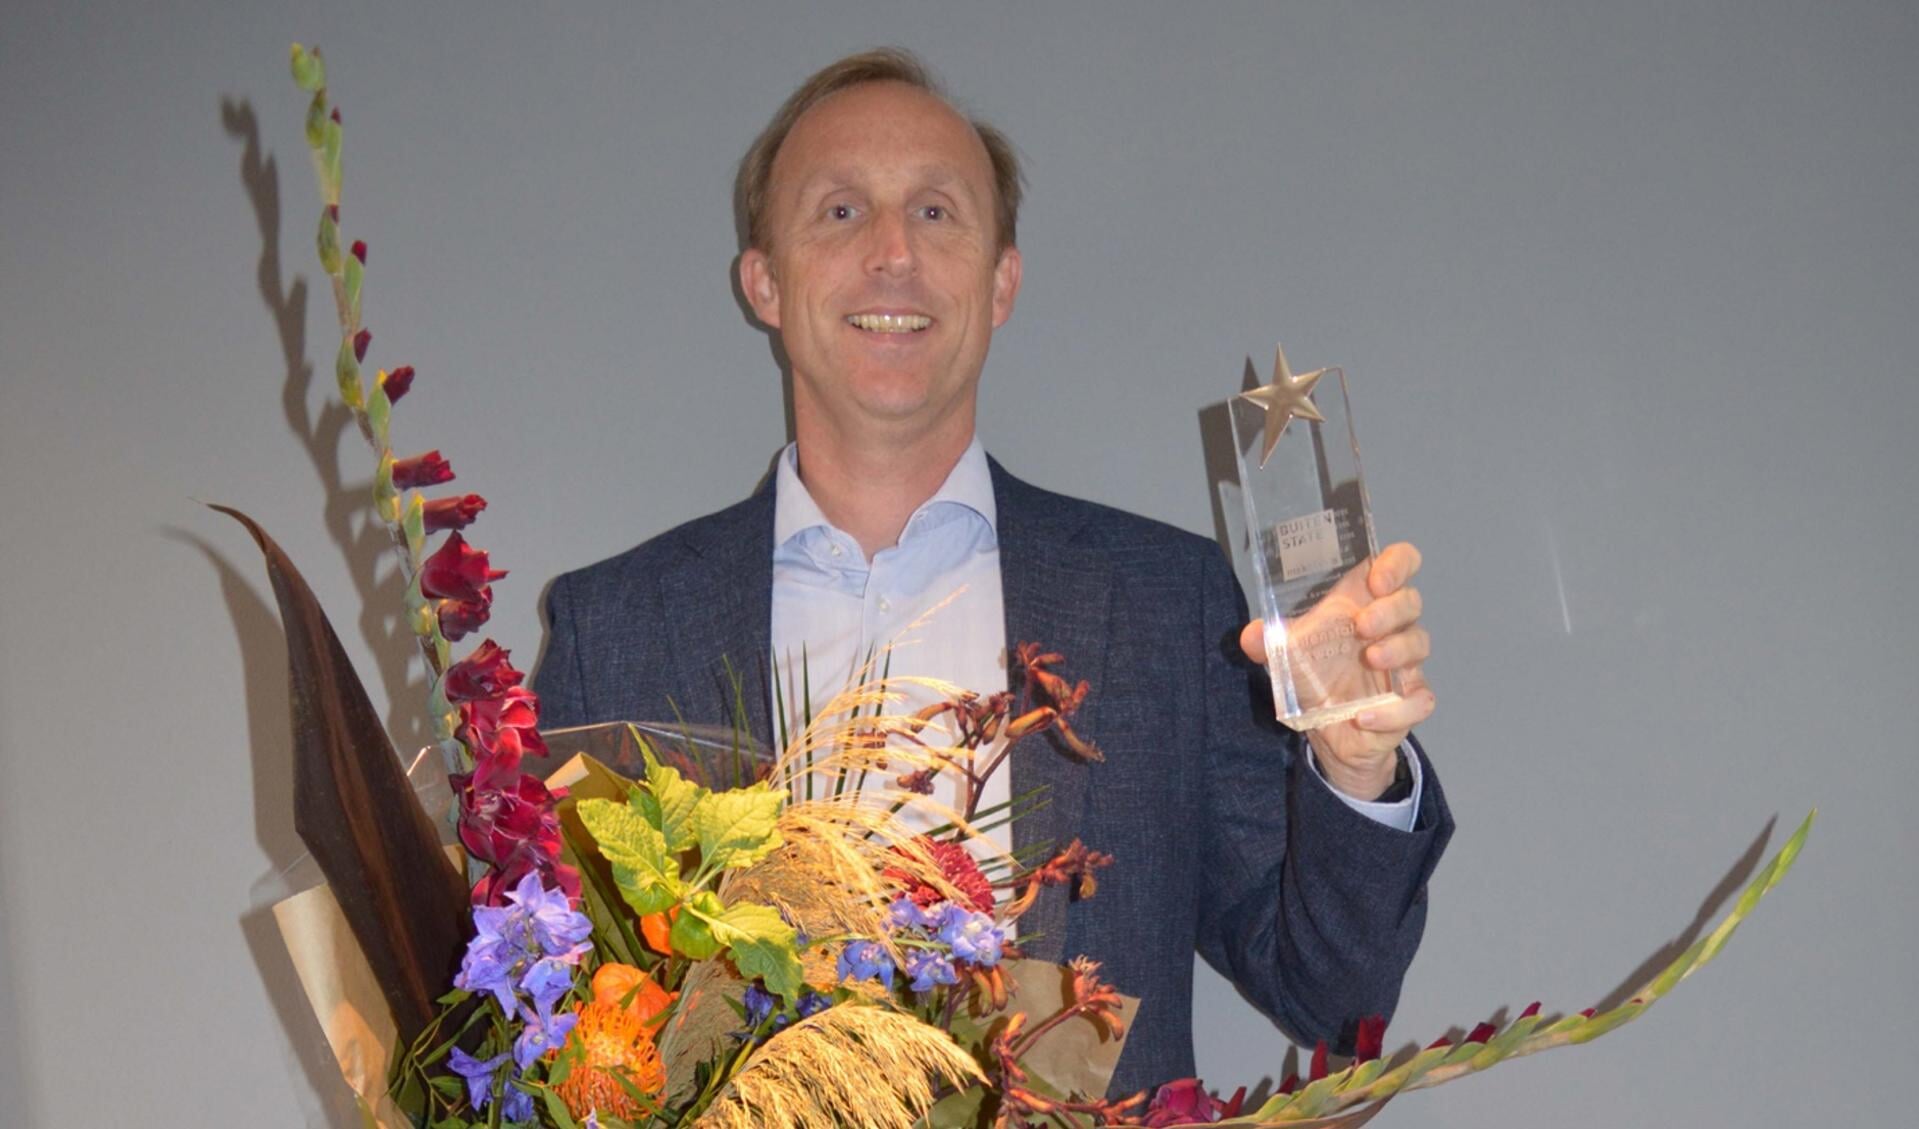 Op de jaarlijkse Buitenstate bijeenkomst kreeg Maurijn van den Berg de Award uitgereikt.